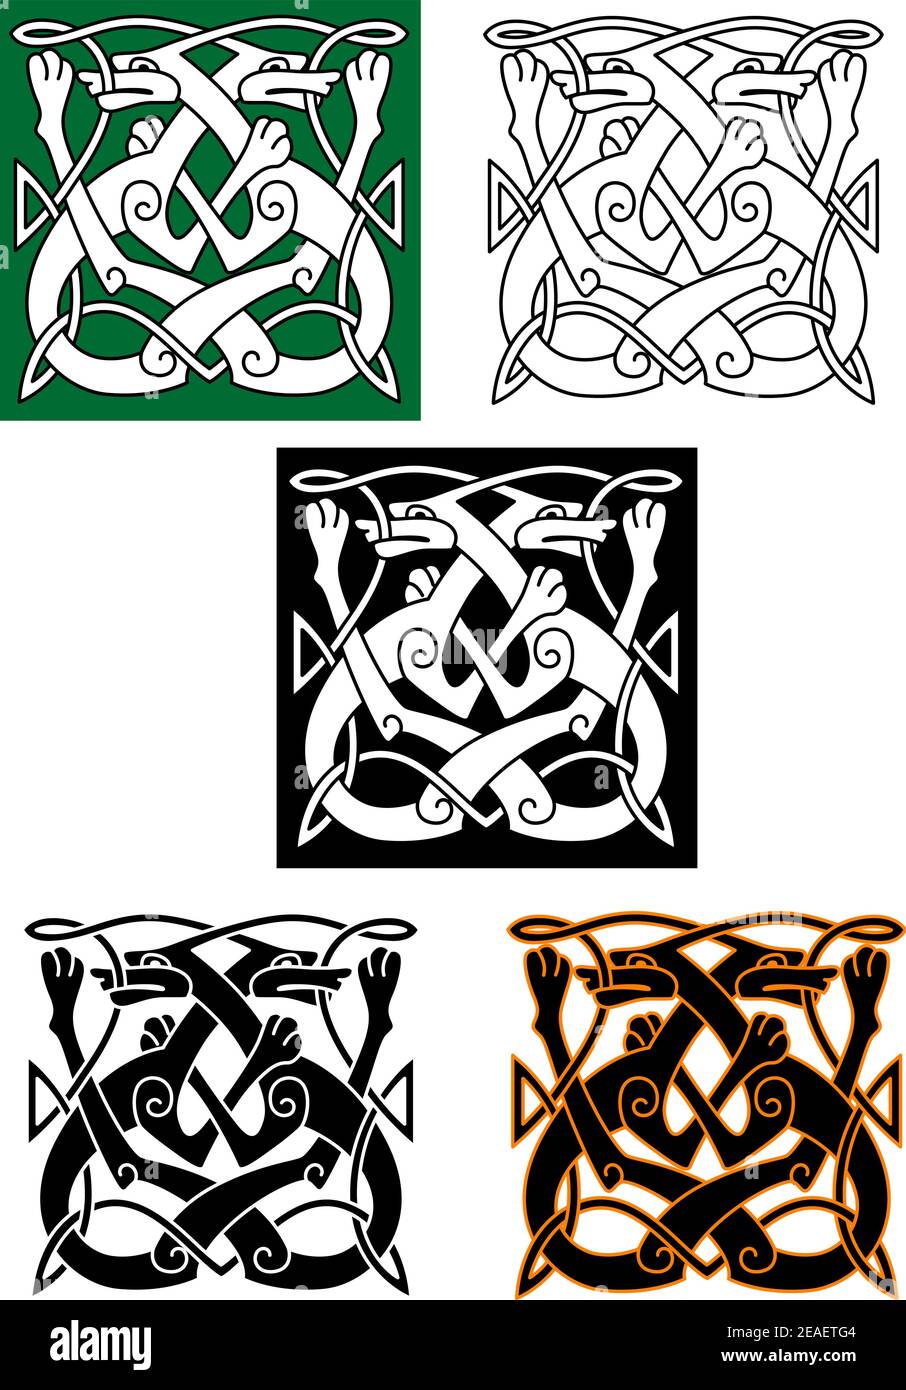 Abstraktes keltisches Muster mit Tier- und Ornamentelementen Stock Vektor